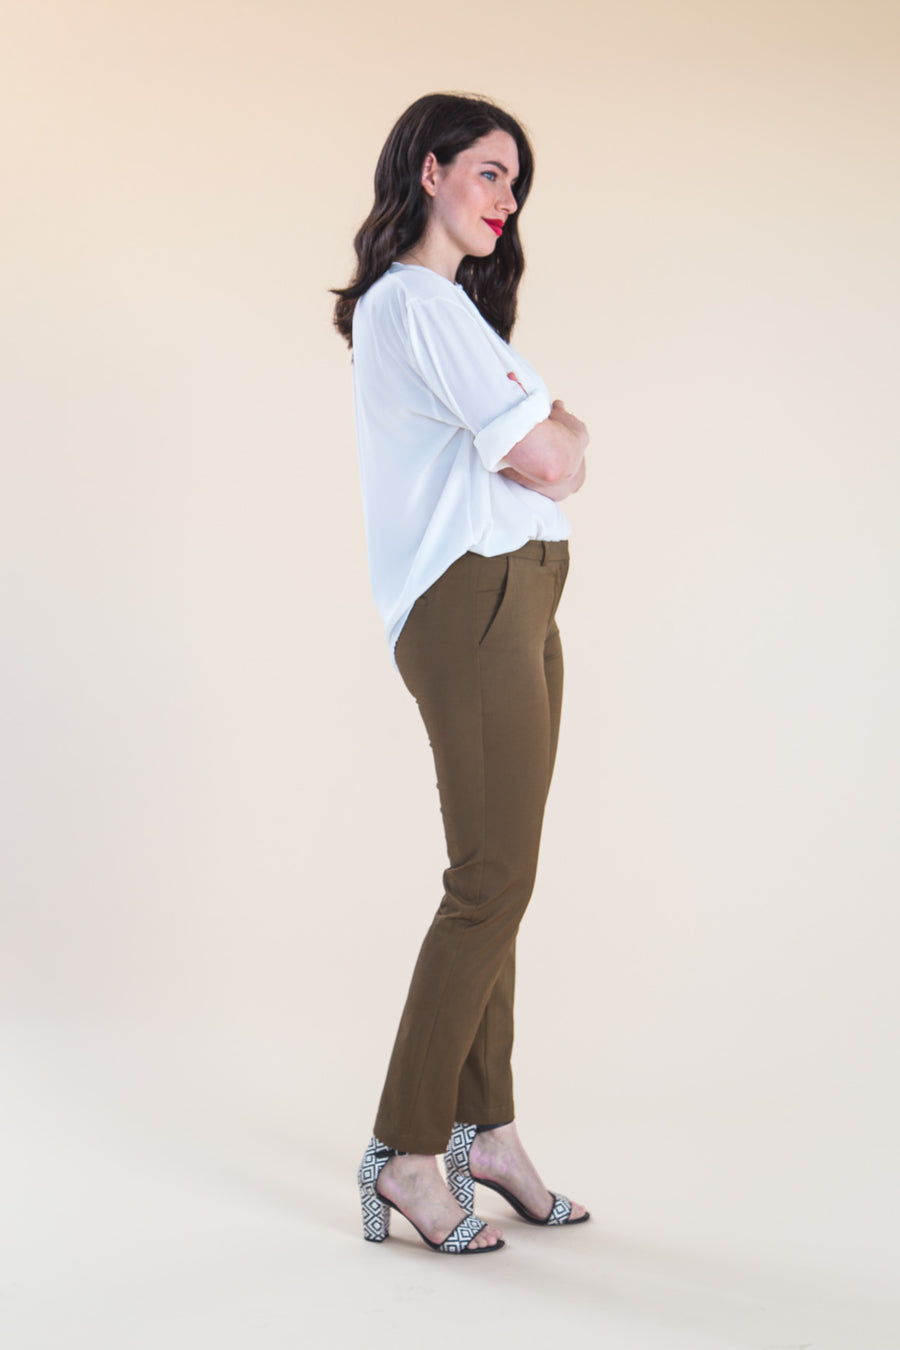 Sasha Trousers Pattern // Stretch Pants Pattern // by Closet Core Patterns